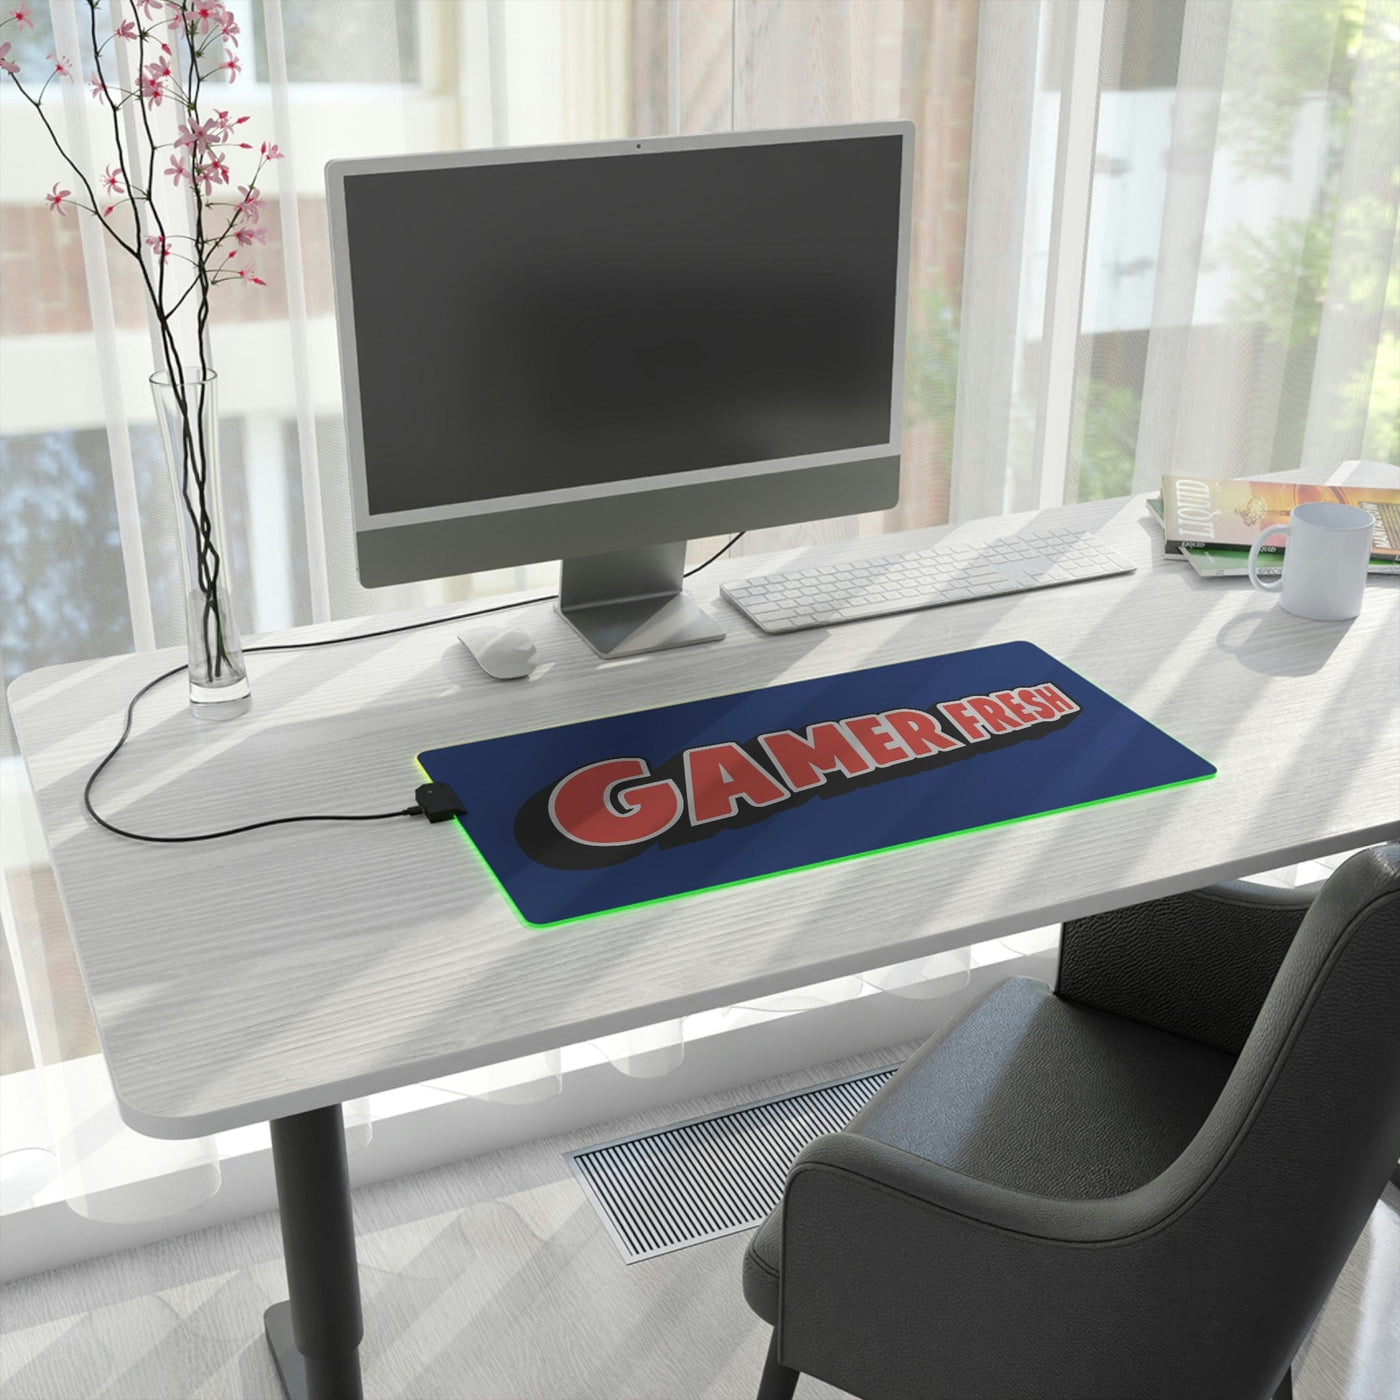 The Gamer Fresh | LED Gaming Computer Desk Mat | Dark Blue